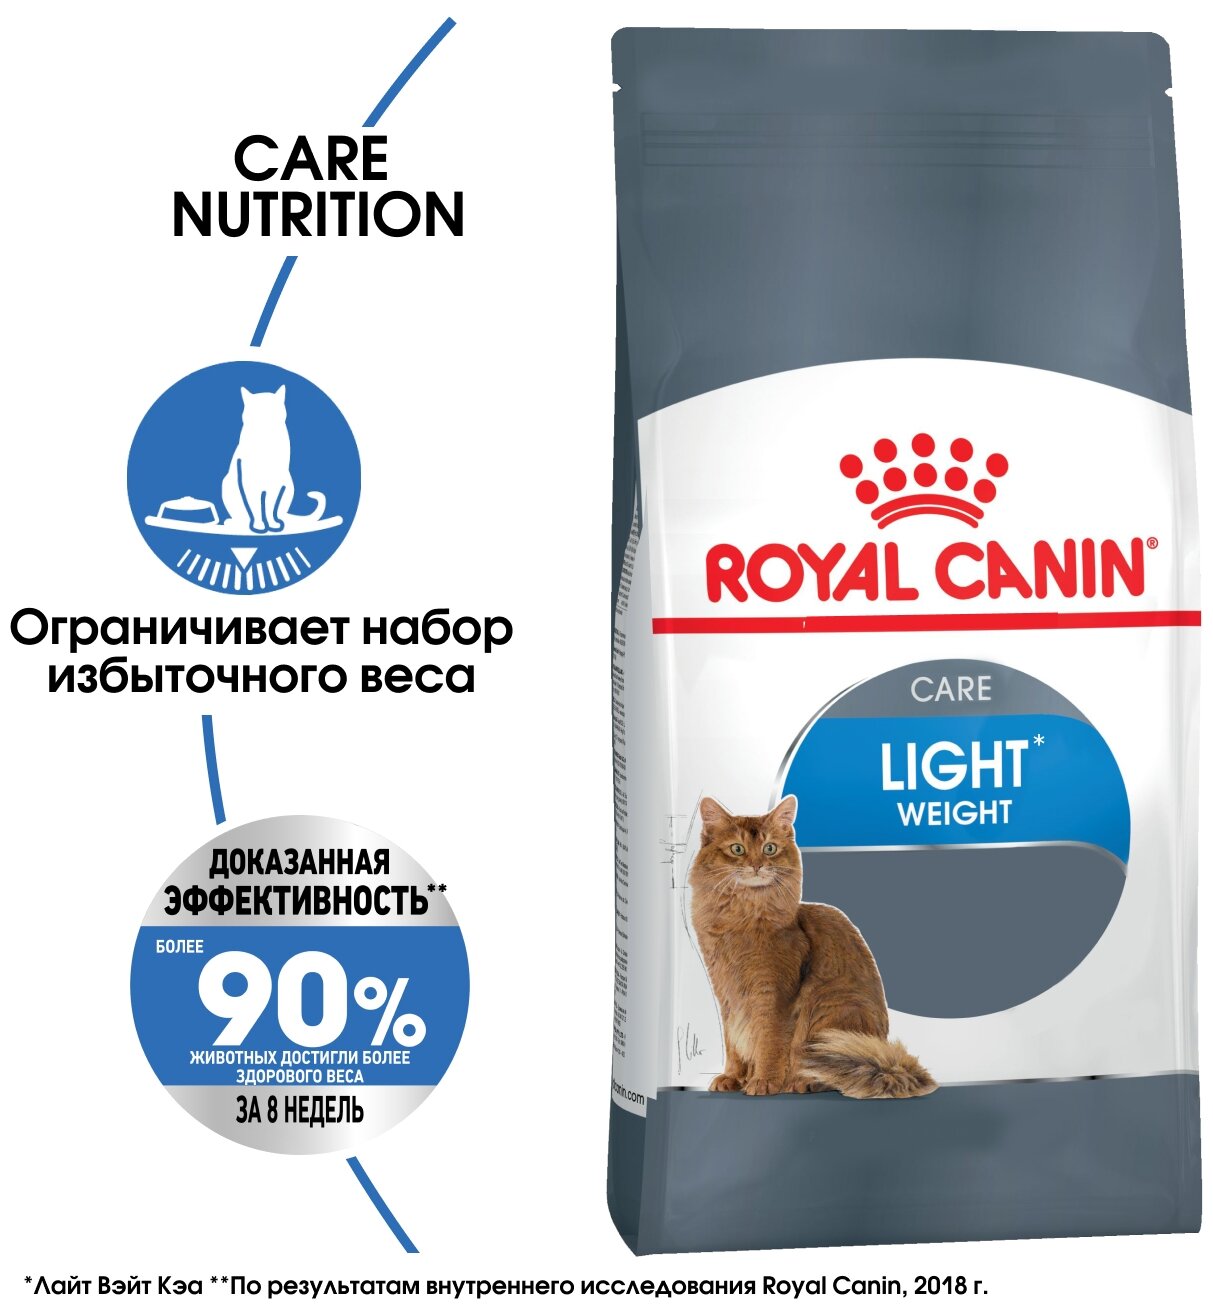 ROYAL CANIN LIGHT WEIGHT CARE диетический для взрослых кошек (3 кг)